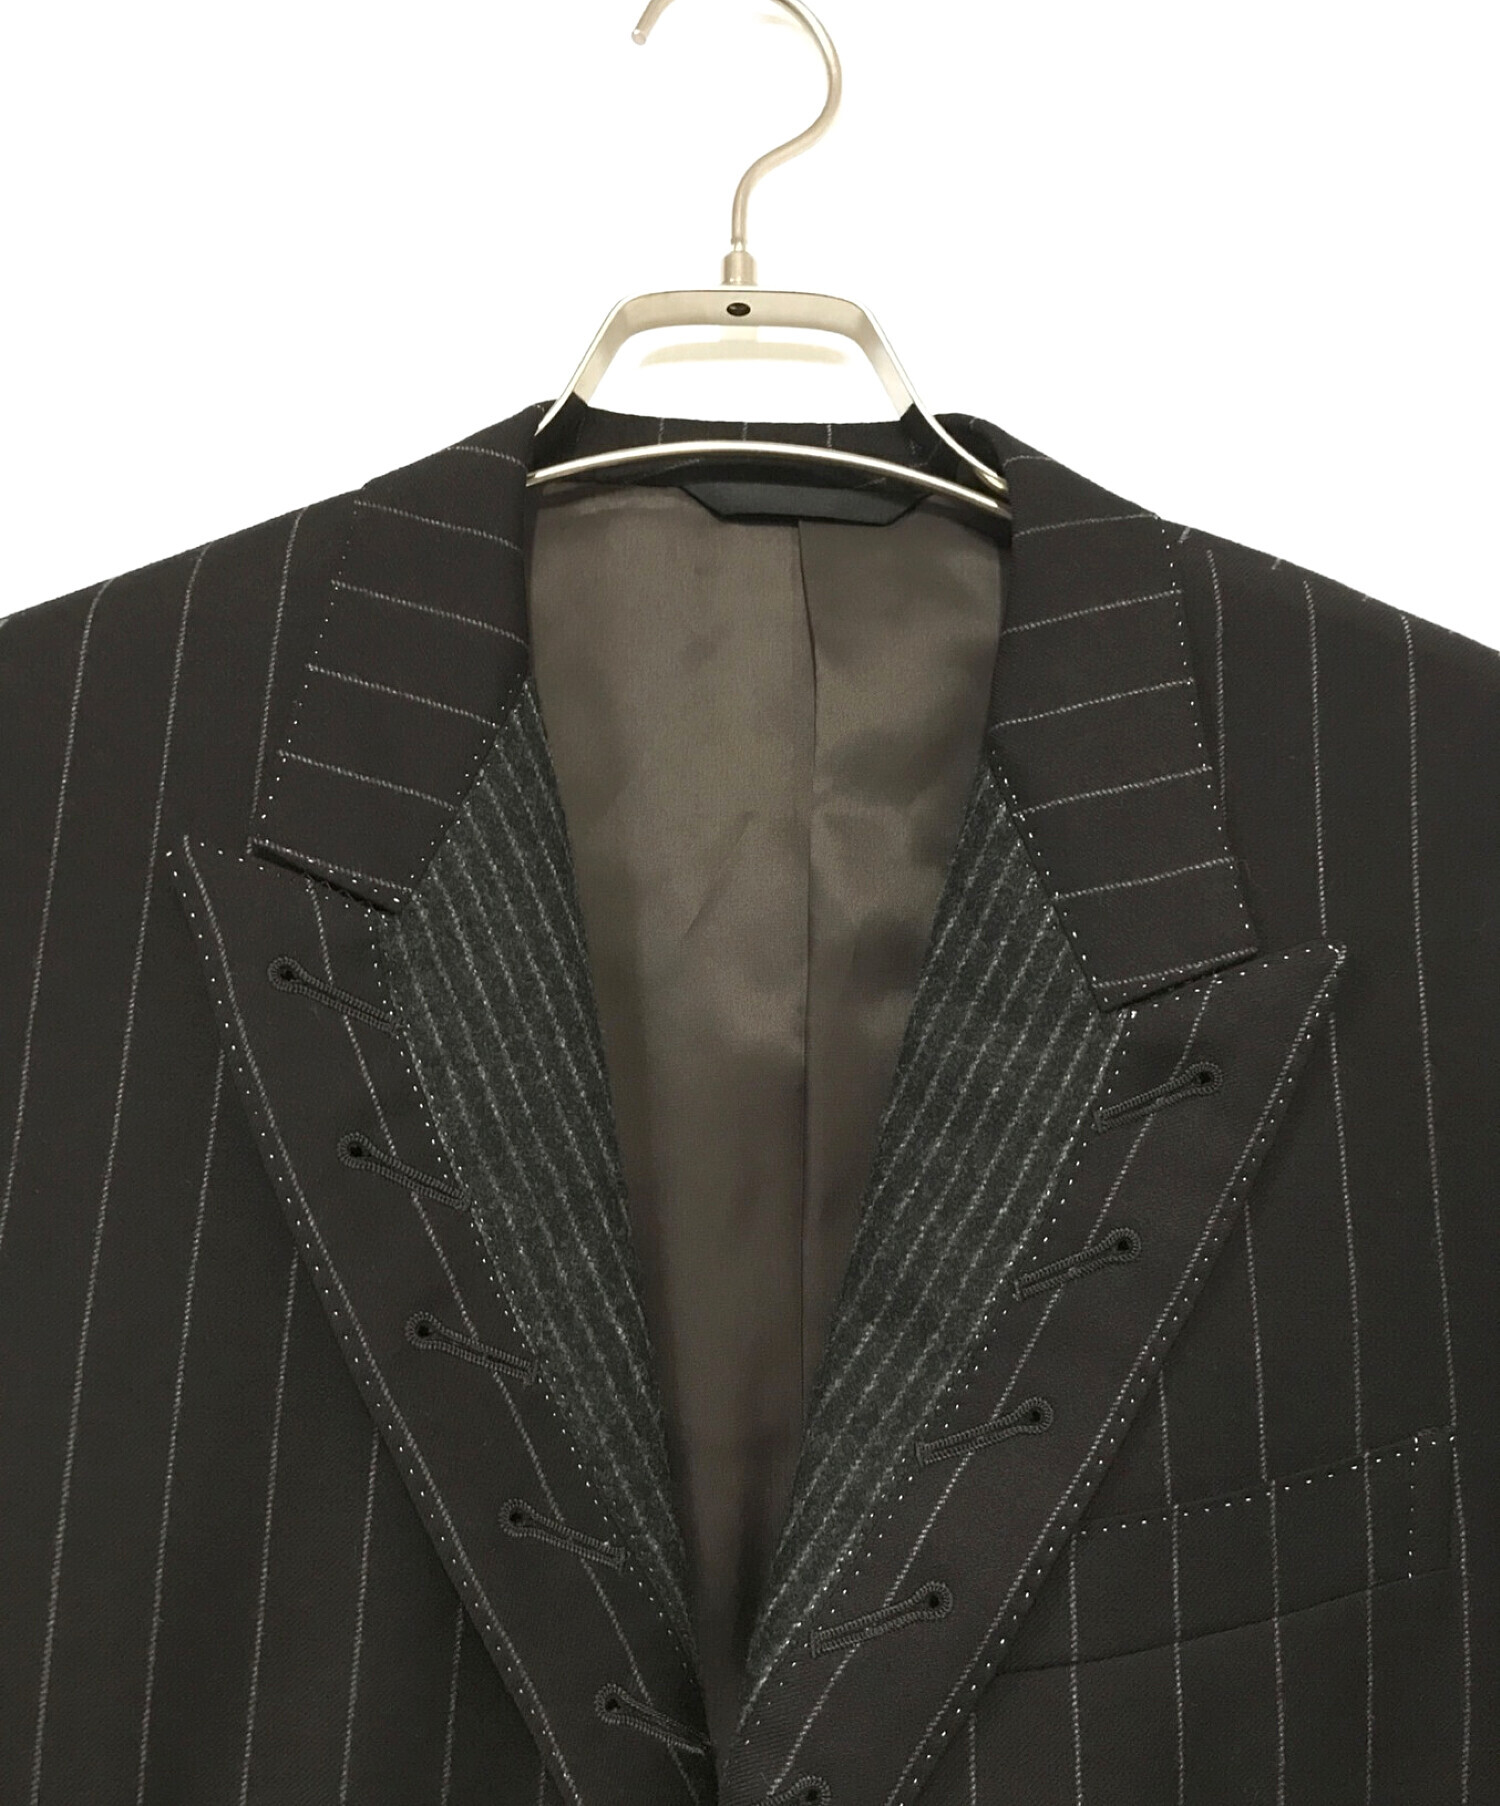 Paul Smith COLLECTION (ポールスミス コレクション) セットアップデザインスーツ ブラック サイズ:Ⅼ